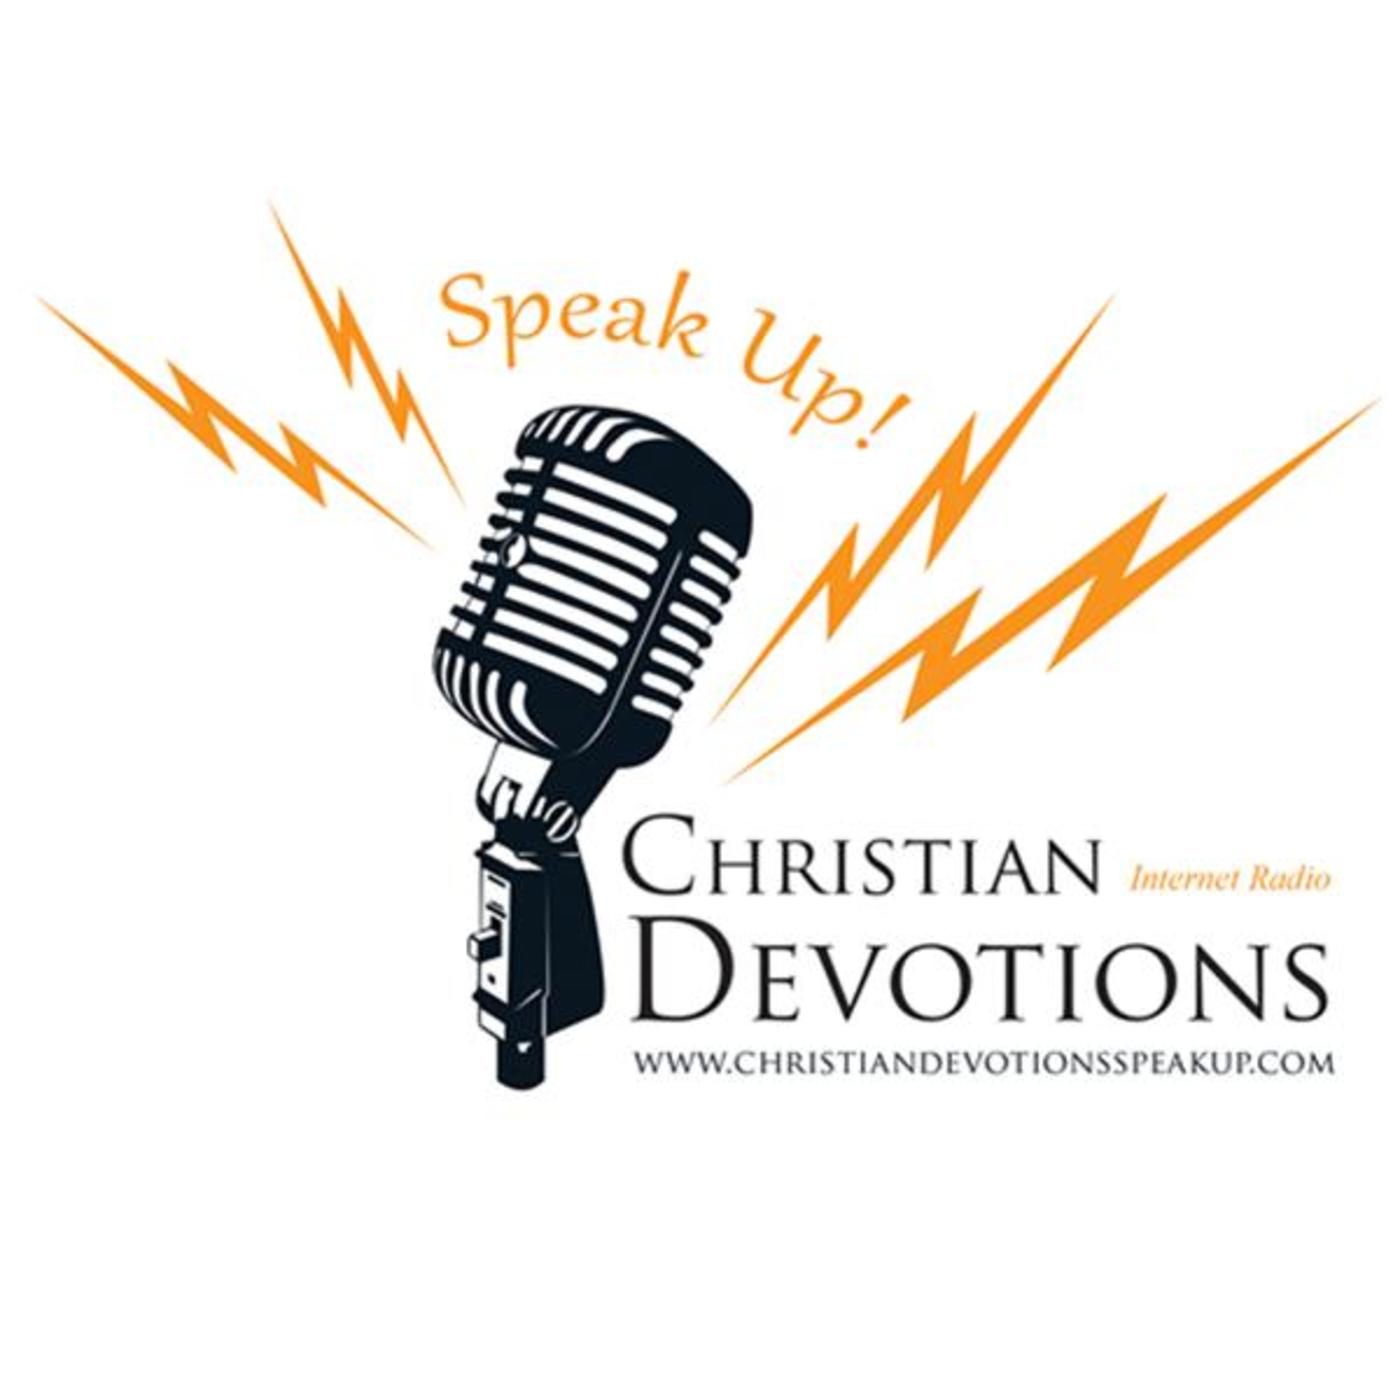 Christian Devotions SPEAK UP!